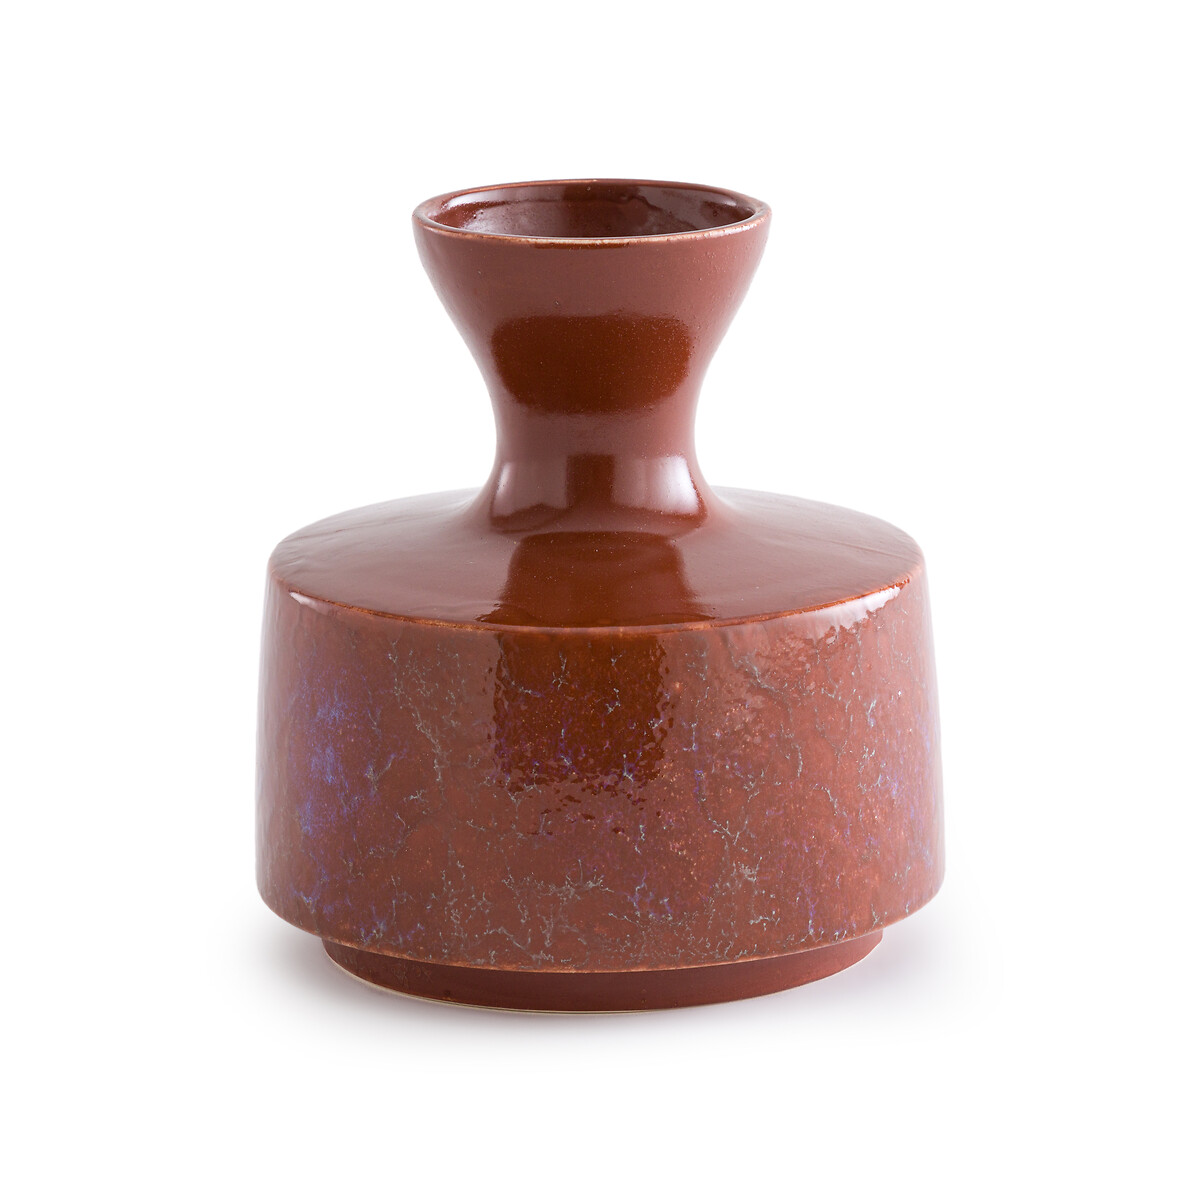 ваза из керамики маленькая модель almada единый размер бежевый Ваза из глазурованной керамики Medine единый размер каштановый